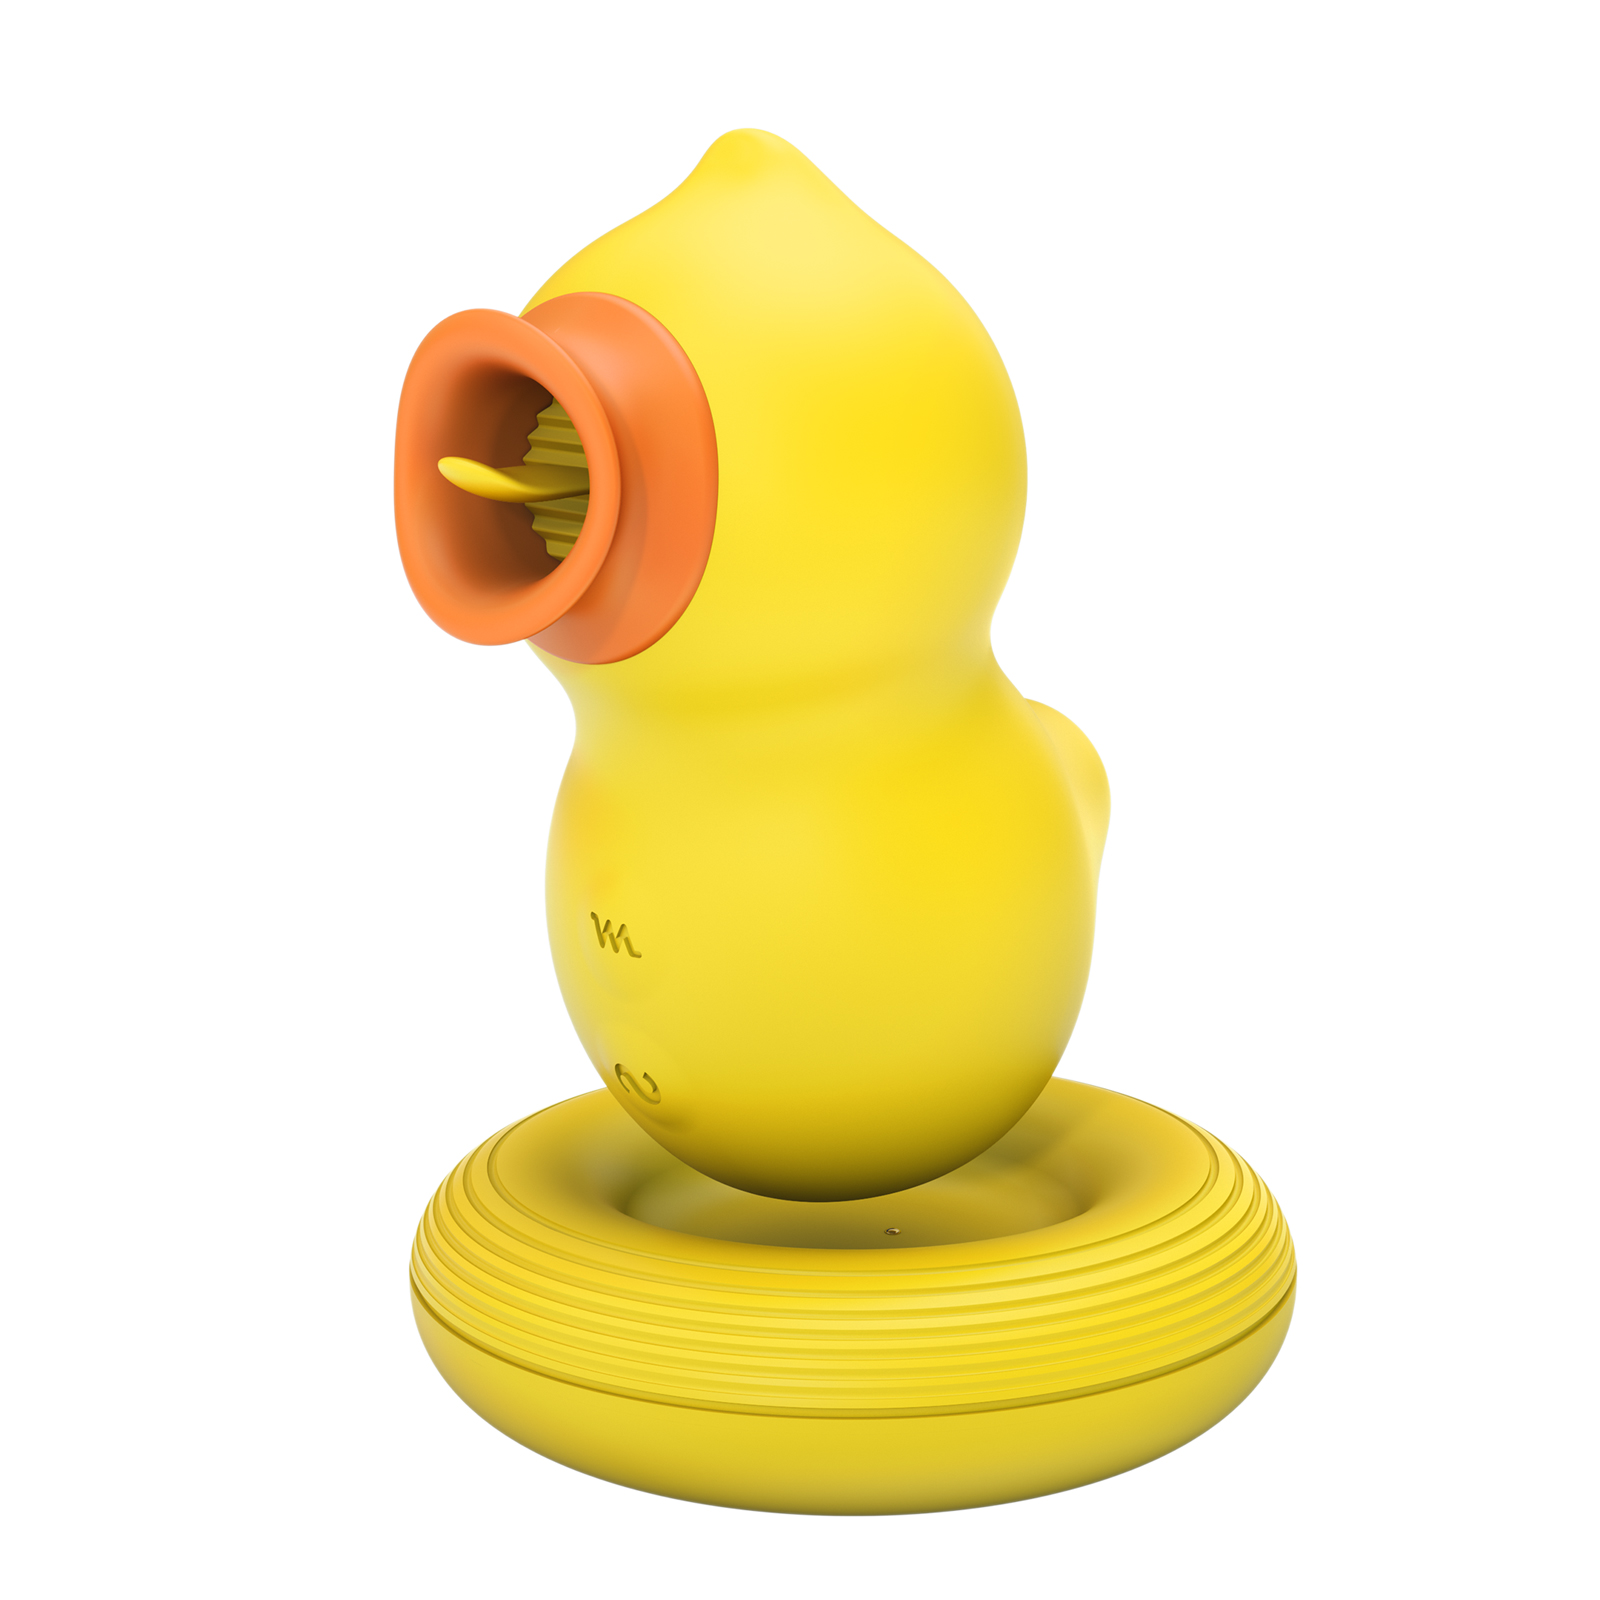 Rubber duck vibrator